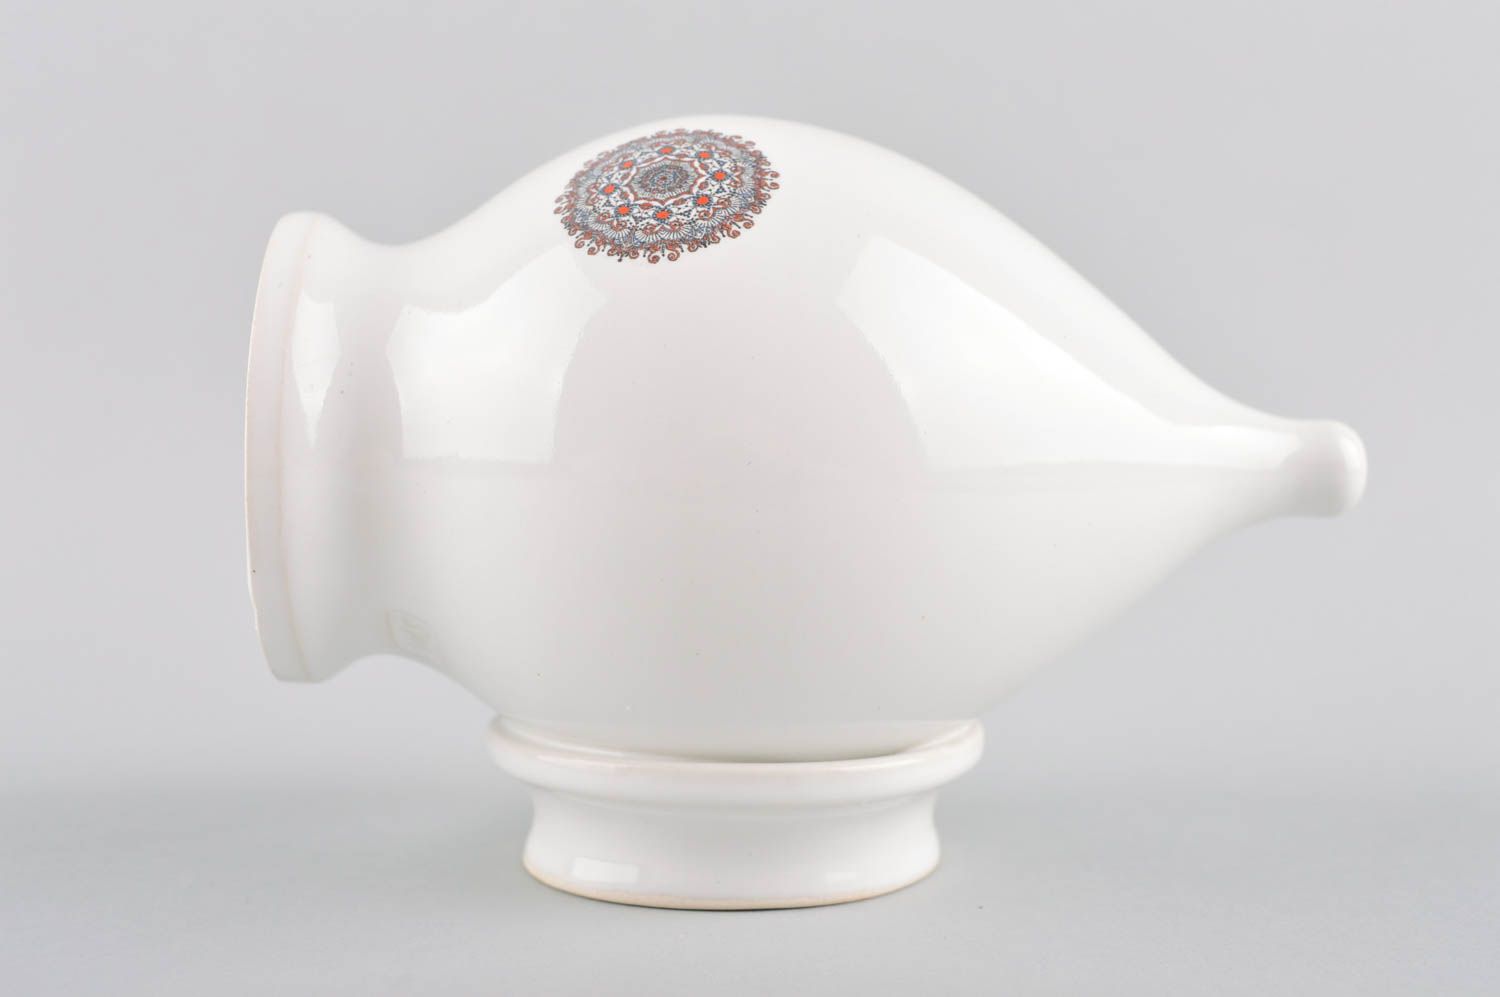 Souvenir de porcelana hecho a mano elemento decorativo regalo personalizado foto 3